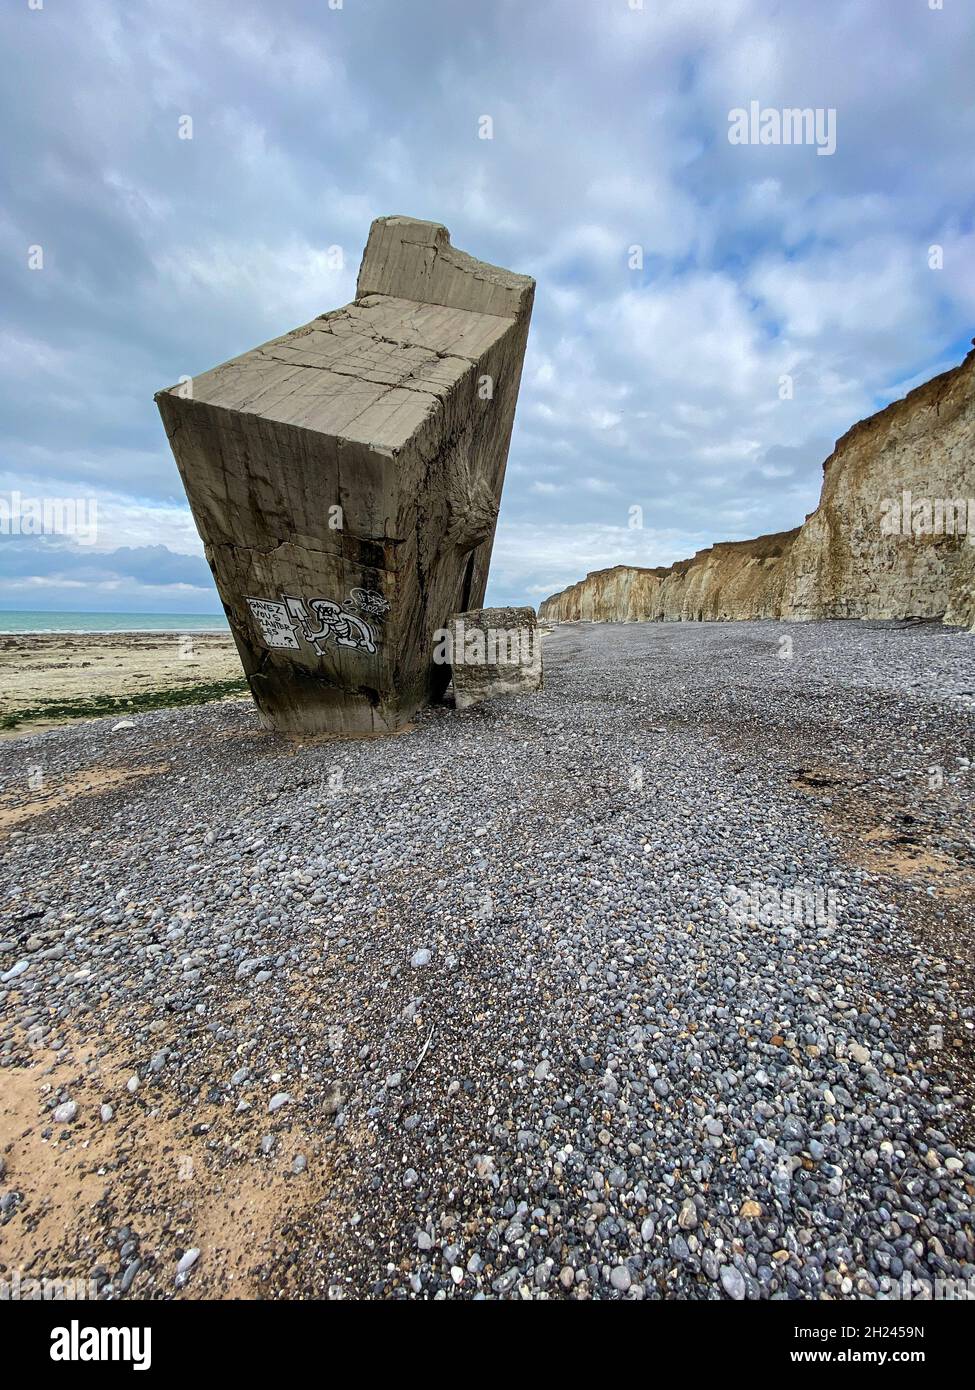 Ein riesiger Bunker des Atlantikwalls ist bei Sainte-Marguerite-sur-Meer von den Kreidefelsen gestürzt. Jetzt steht er aufrecht am Strand. Stock Photo